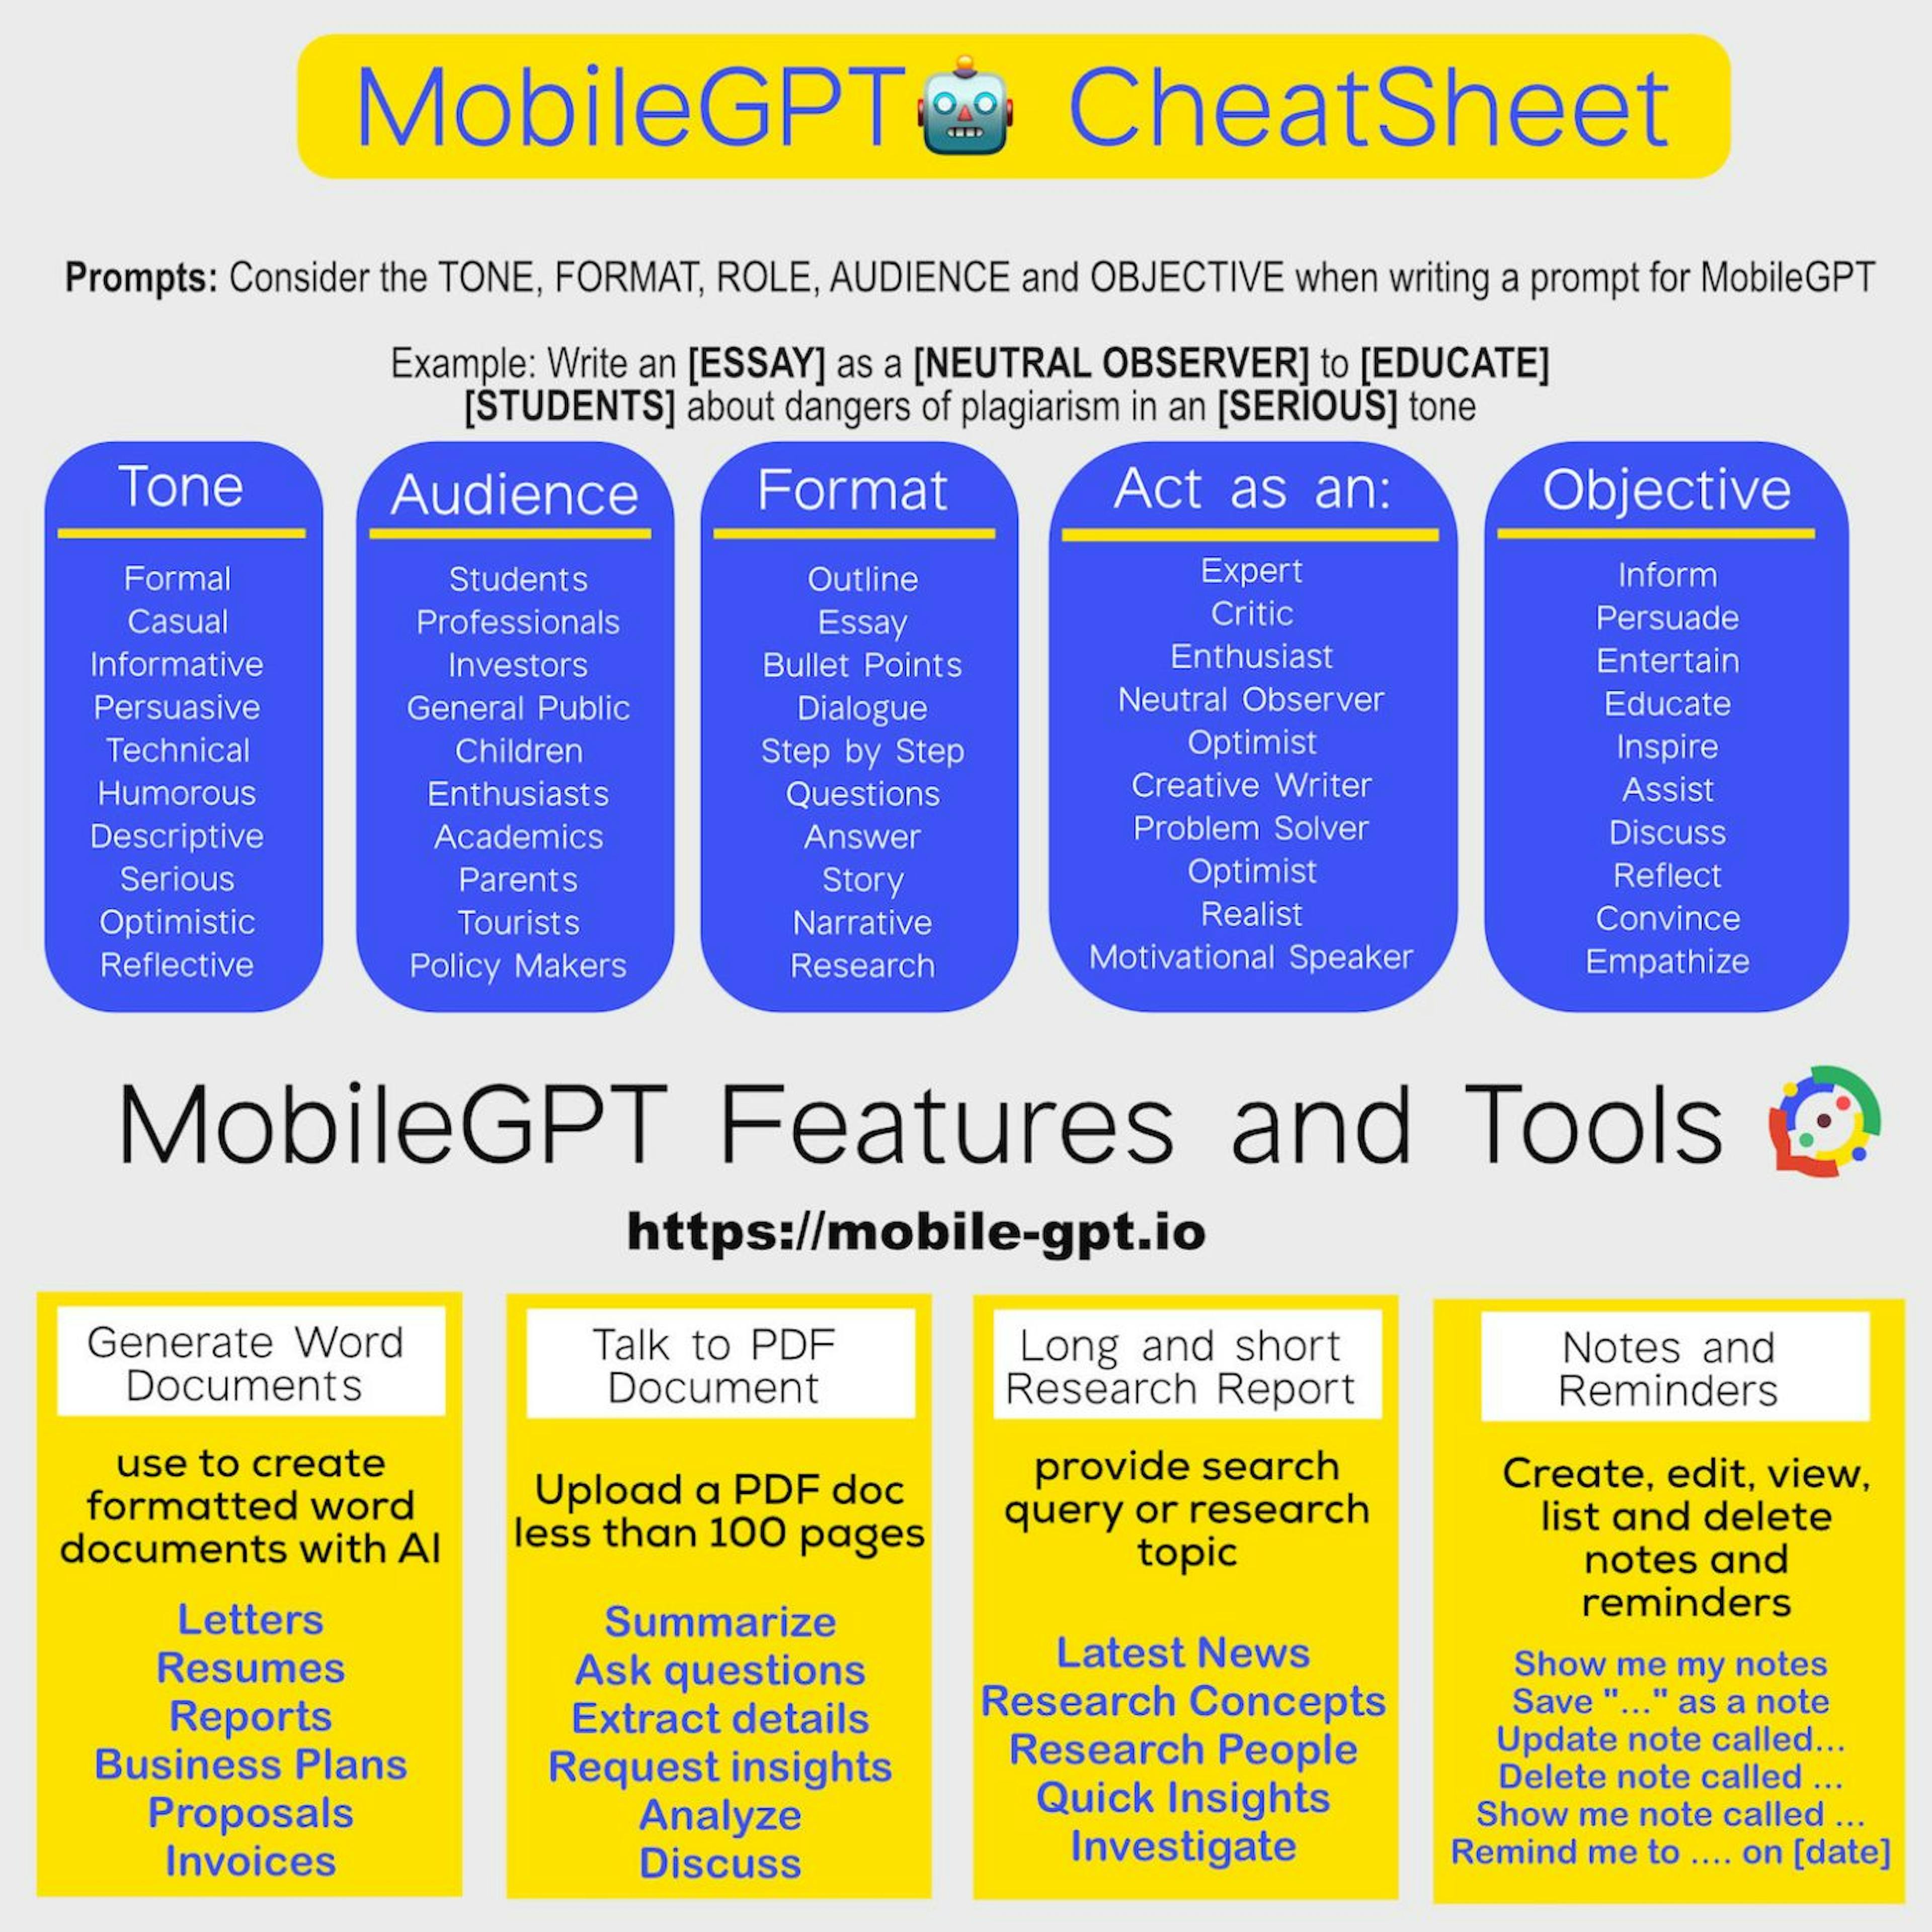 MobileGPT Cheat Sheet